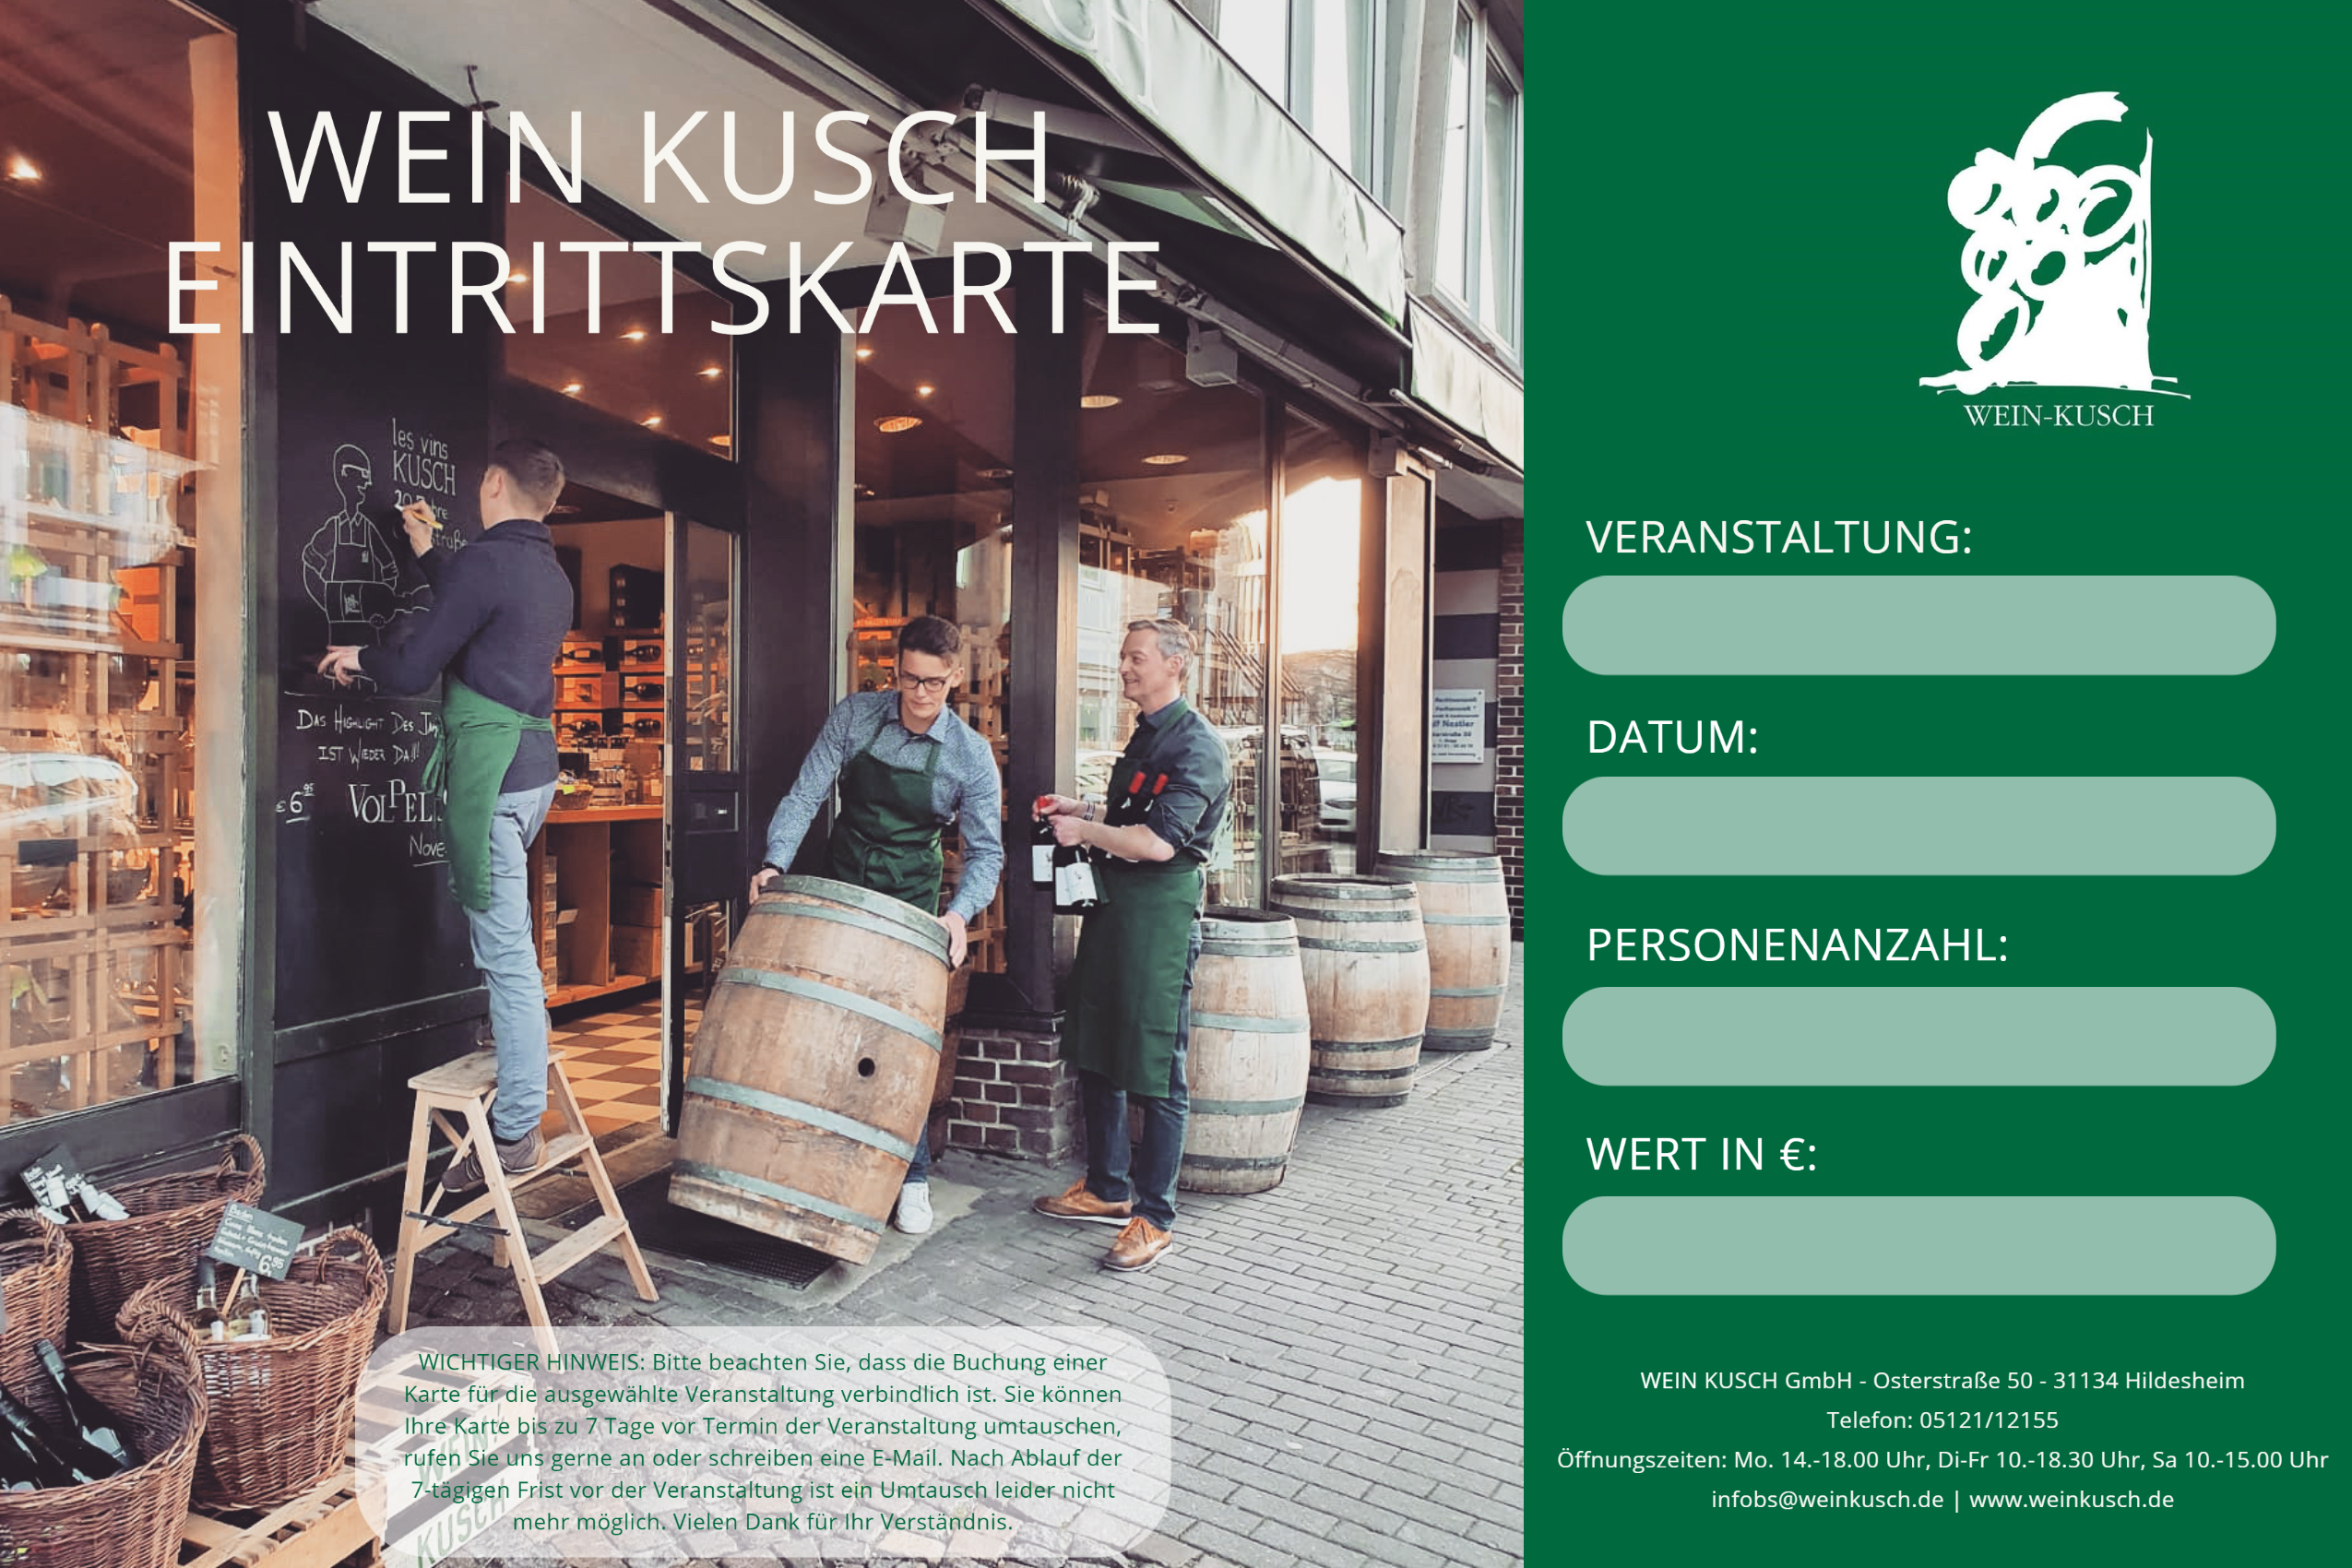 2023.11.24 - Rum Tasting "Rumreise durch die Karibik" in Hildesheim 19.00 Uhr